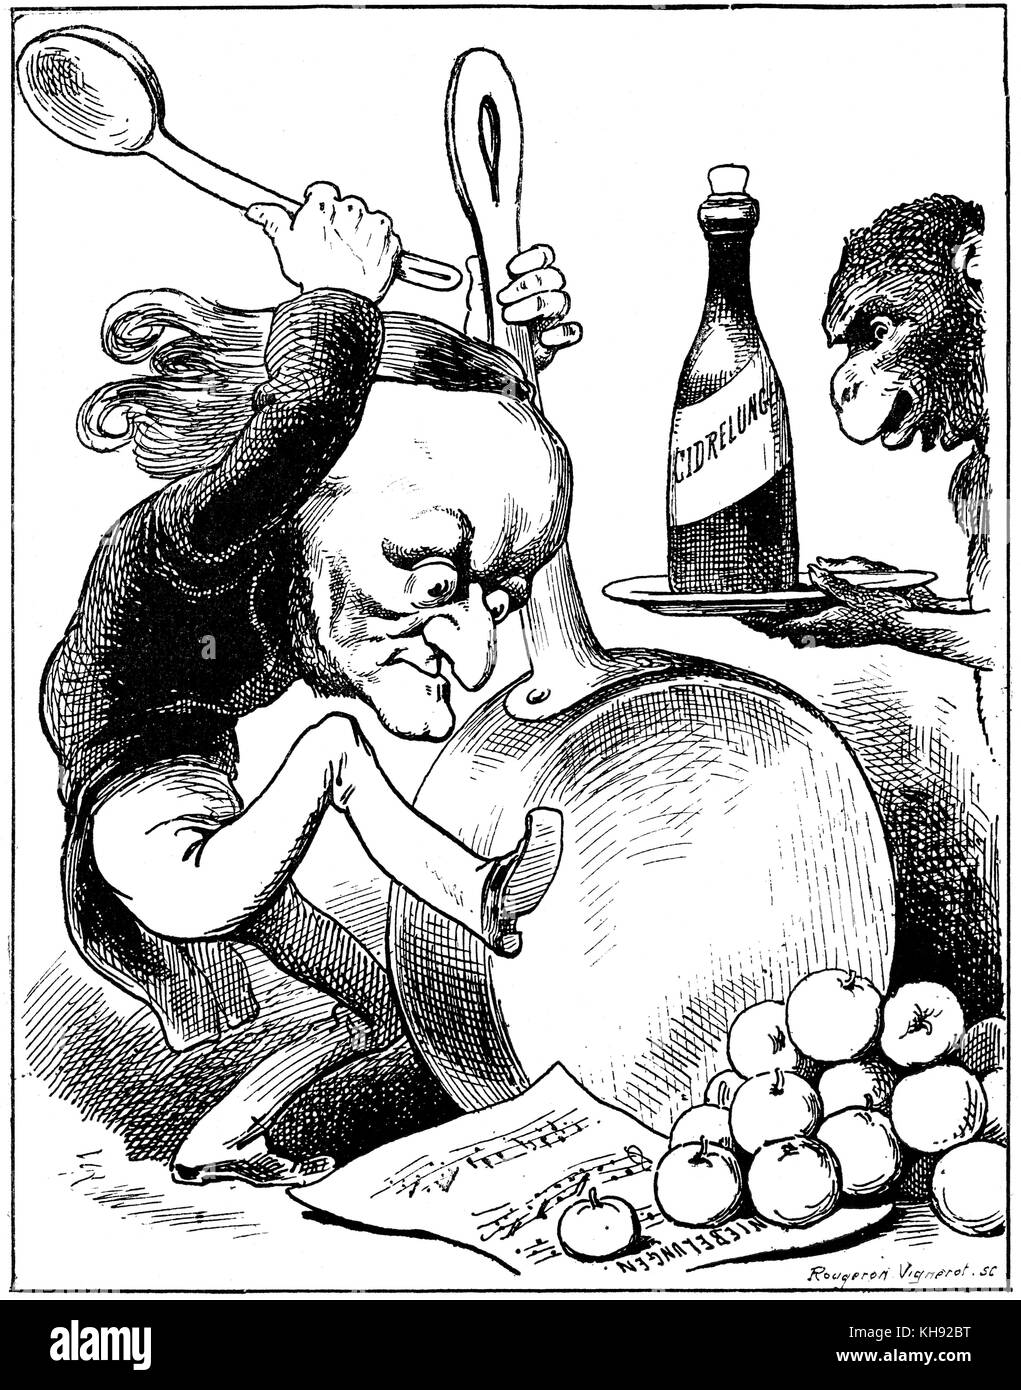 Wagner der Tetralogue - Karikatur von André Gill gestochen von rougeron Vignerot. Ein Schimpanse präsentiert Wette eine Flasche mit "Cidrelungen' geschrieben auf dem Etikett (Verweis auf Nieleungen) Zyklus von Opern. Es schlägt vor, daß er in der Lage gewesen ist, den französischen Geschmack für 'l'art du Cri-cri' und die Vergabe selbst alle Äpfel von Frankreich zu überwinden. Stockfoto